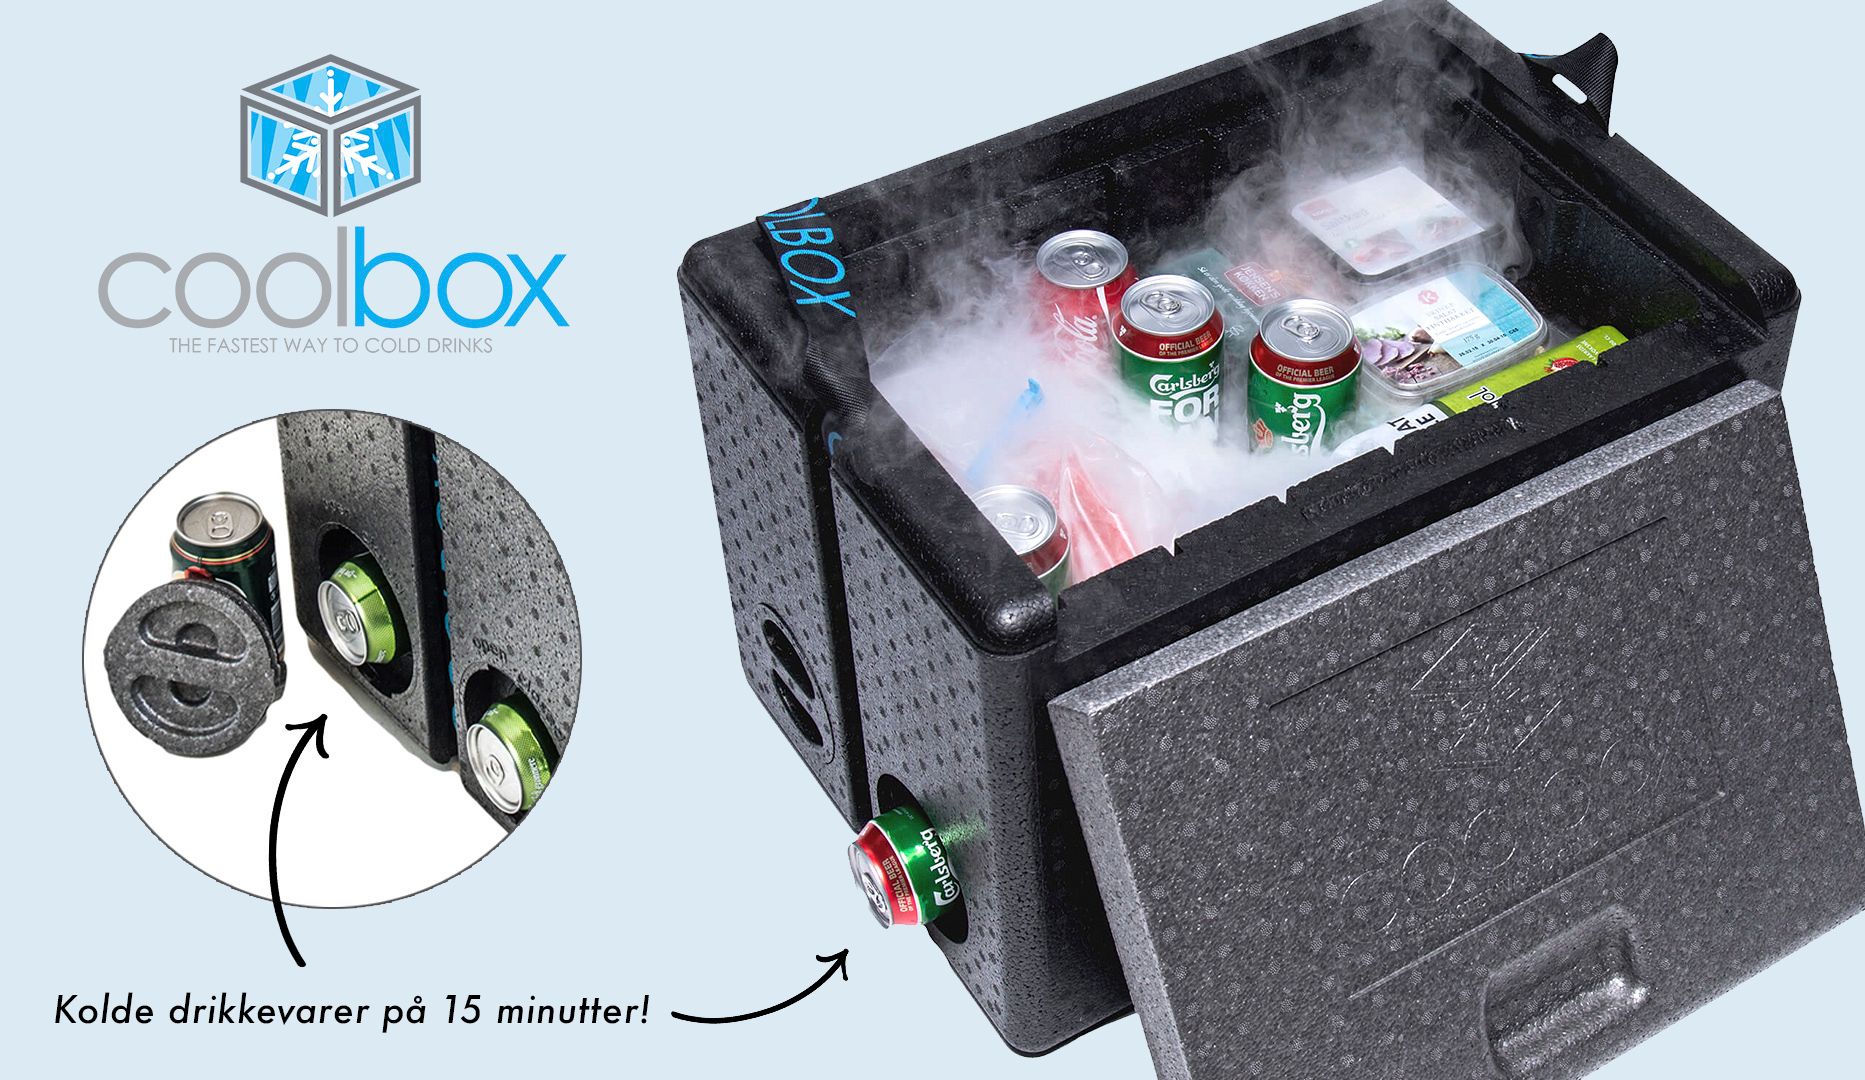 Coolbox – holder koldt i 20-24 timer Tilbud på oplevelser i København, Aarhus, og Odense!